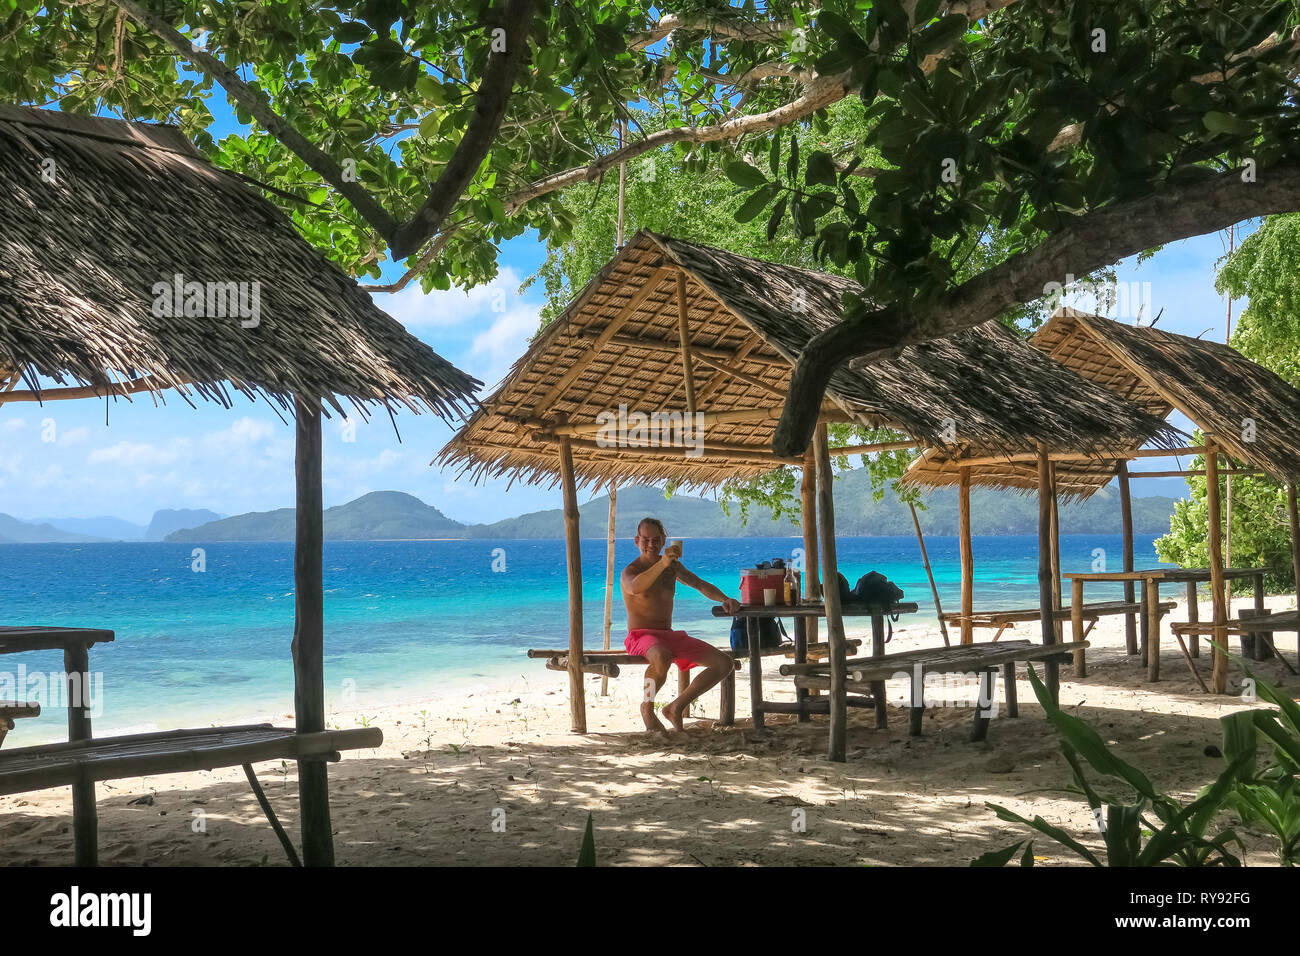 Turista holandesa Hombre bebiendo en Bamboo Beach hut Linapacan Isla Palawan - Filipinas Foto de stock